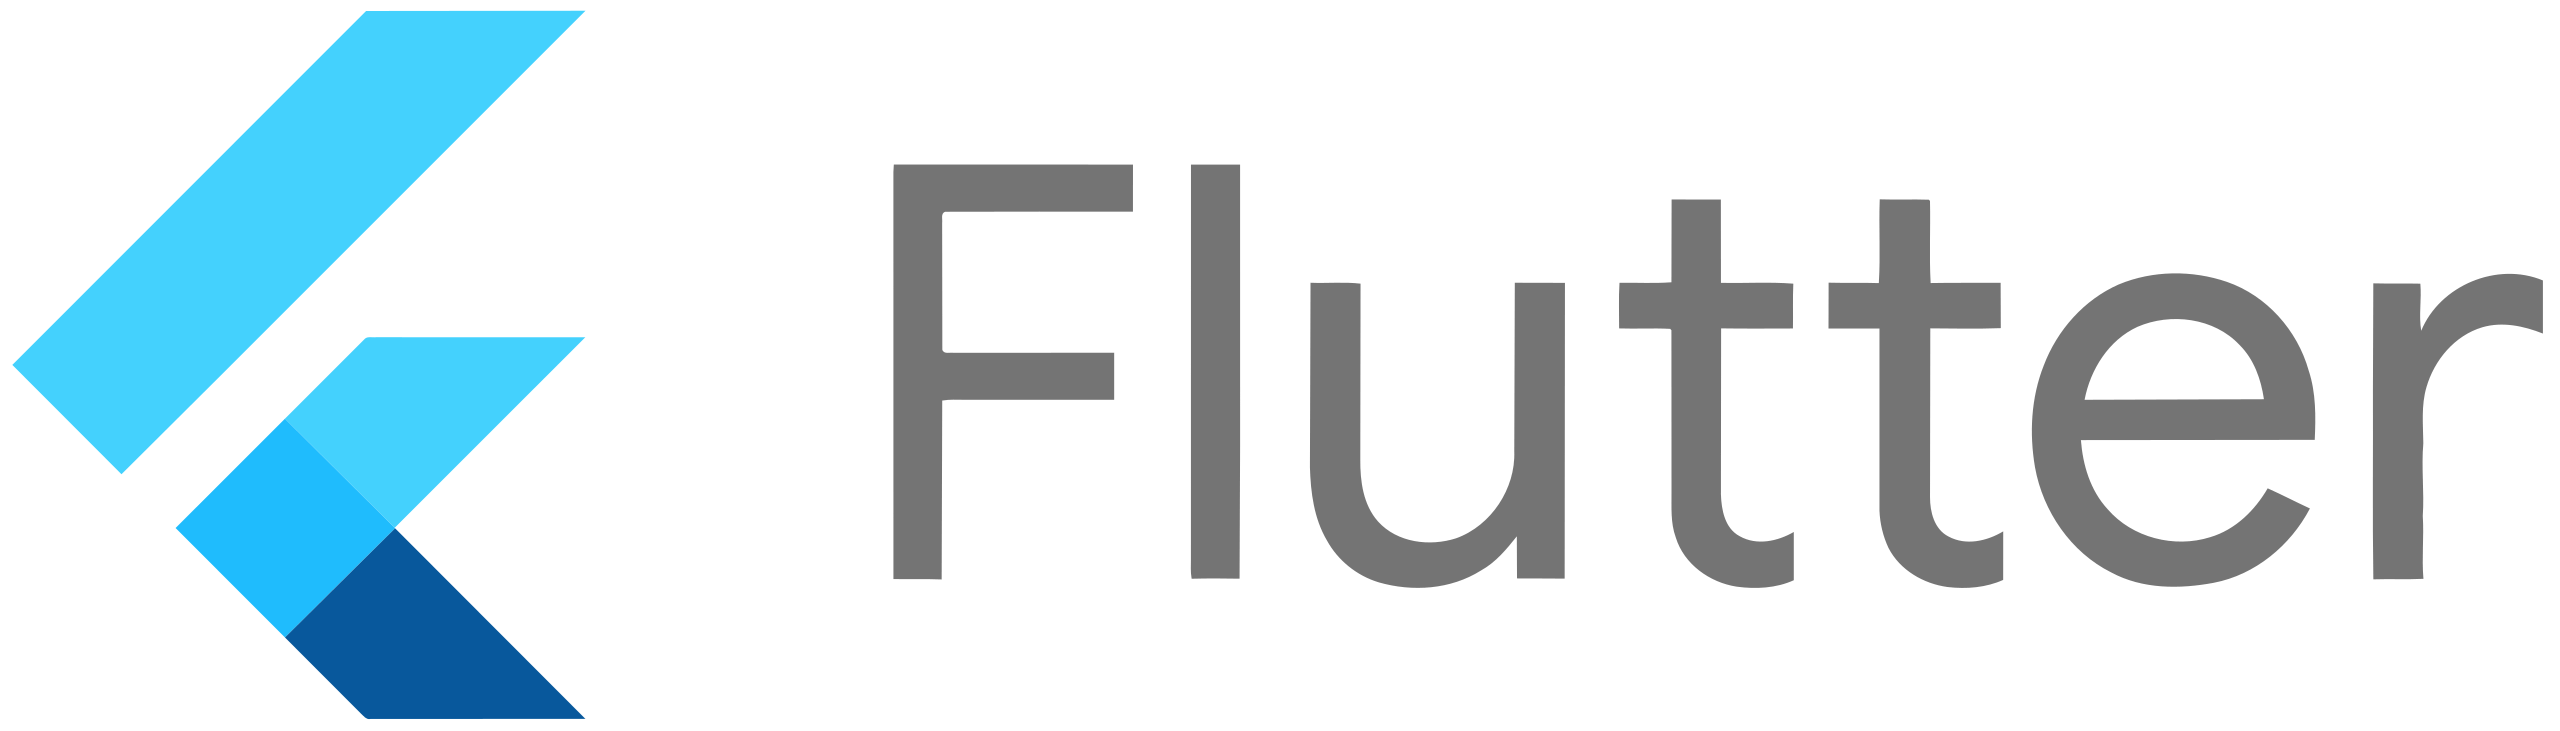 Google-flutter-logo.svg.png